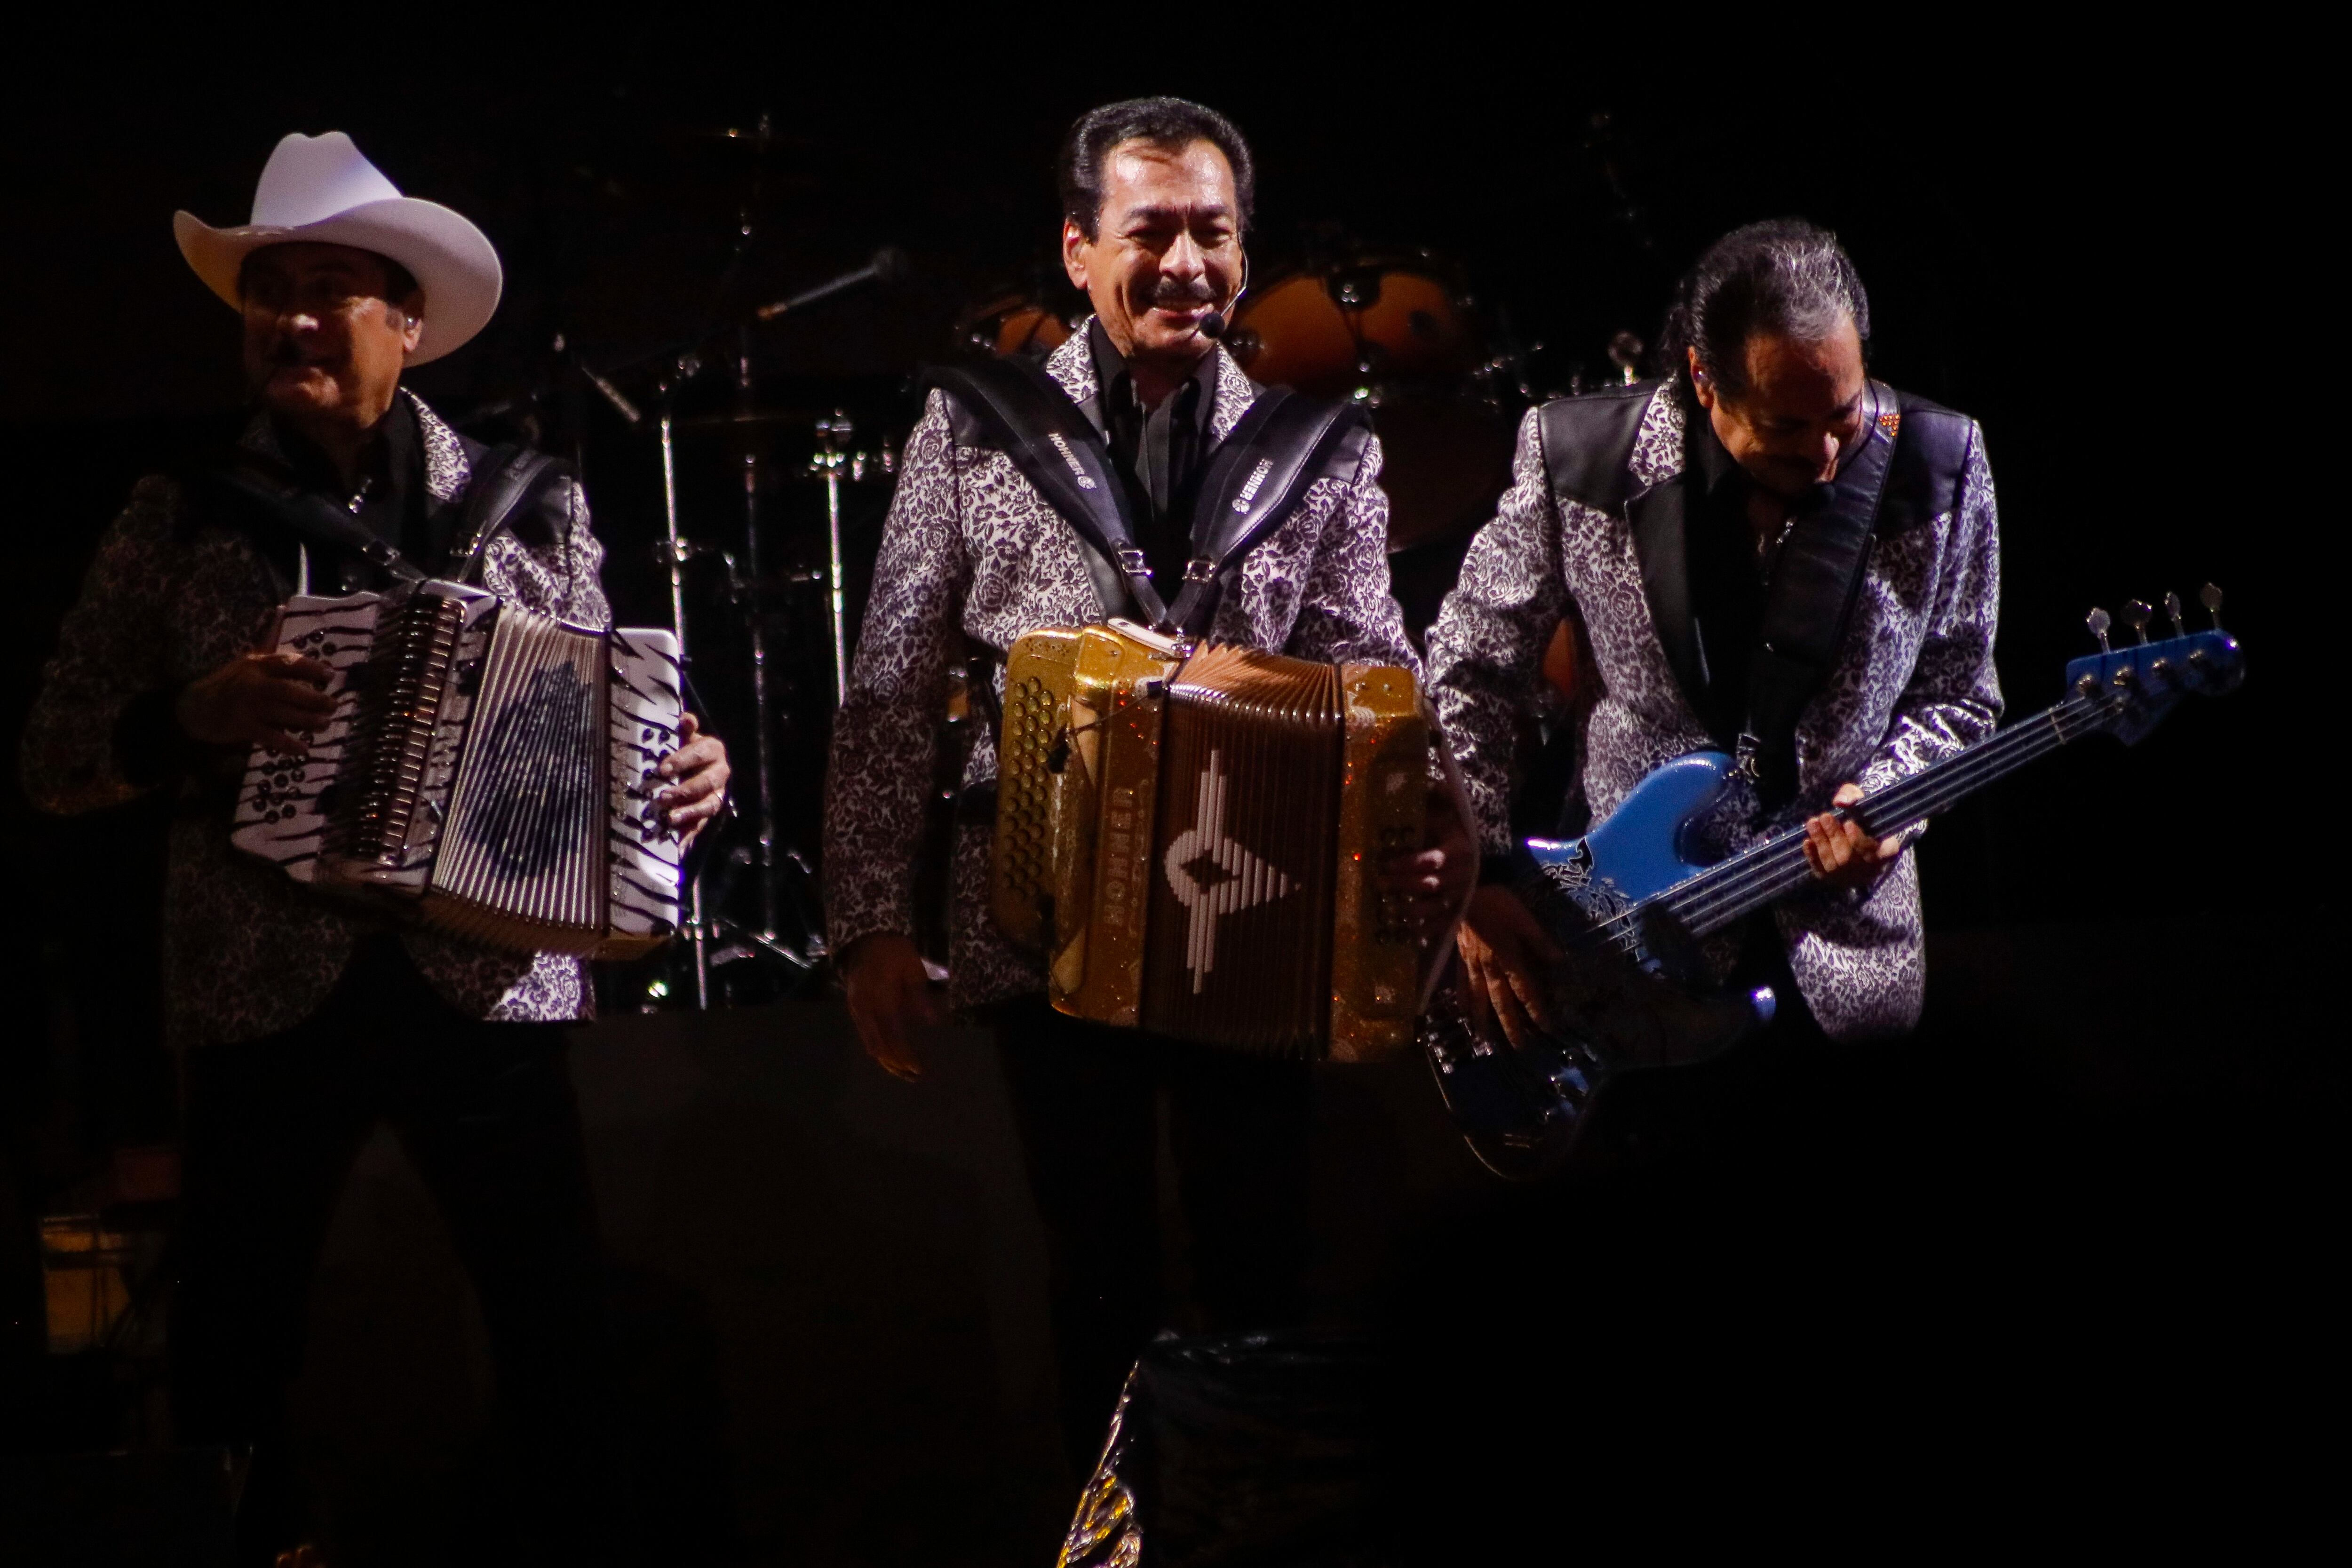 Las nuevas generaciones de artistas de música regional mexicana reconocen a Los Tigres del Norte como una leyenda del género.  El grupo volverá a concierto en Costa Rica para celebrar el Día de la Madre.